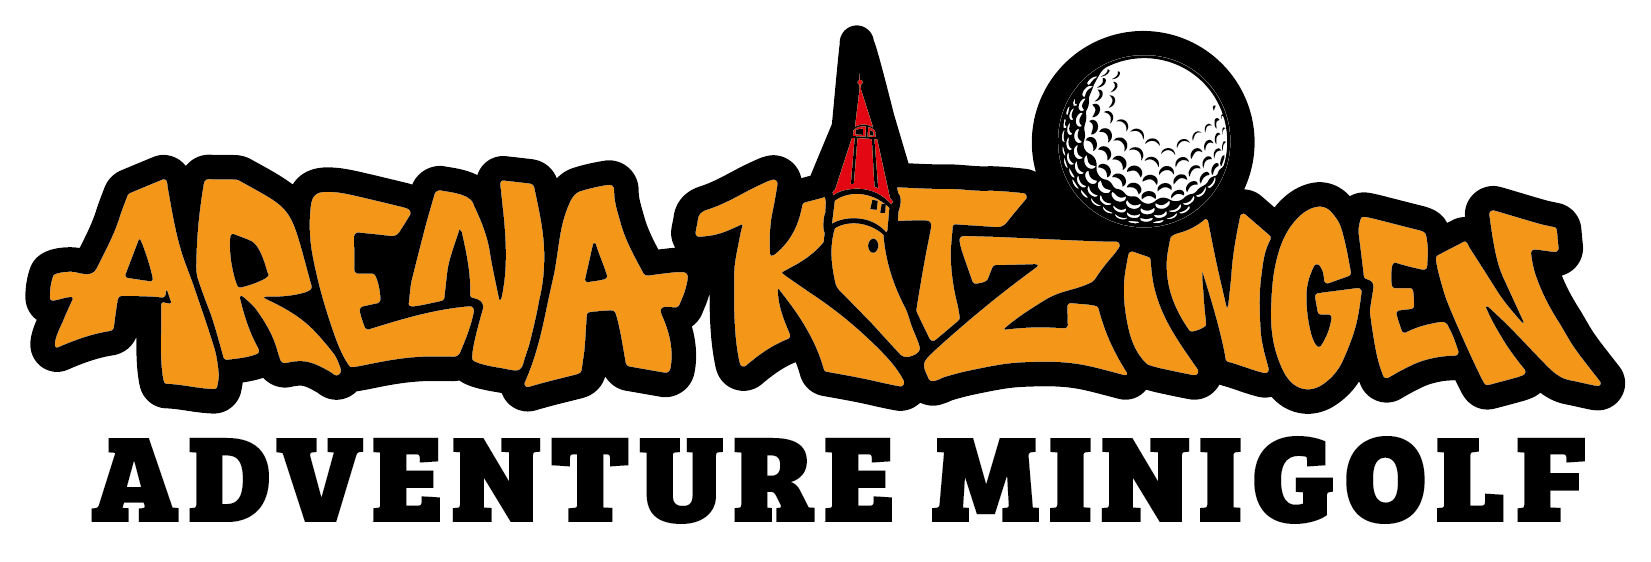 Adventure Minigolf Kitzingen – Innopark Campus